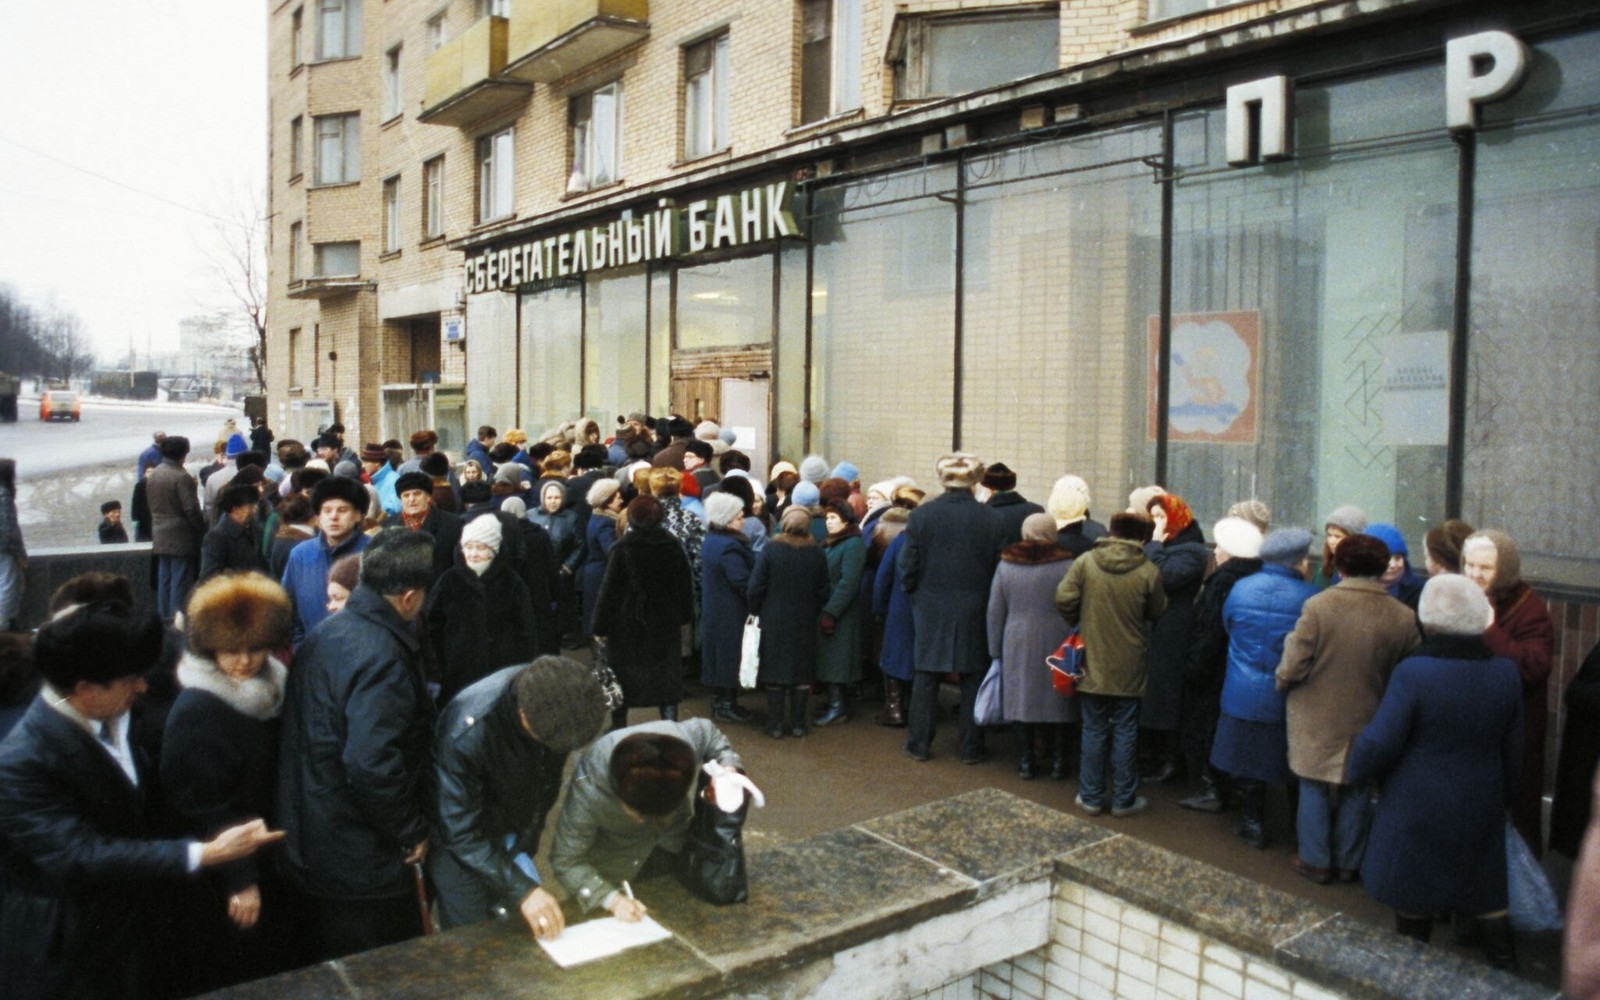 1990. Люди стоят в длинной очереди, чтобы положить деньги на счёт в Сбербанке. Москва